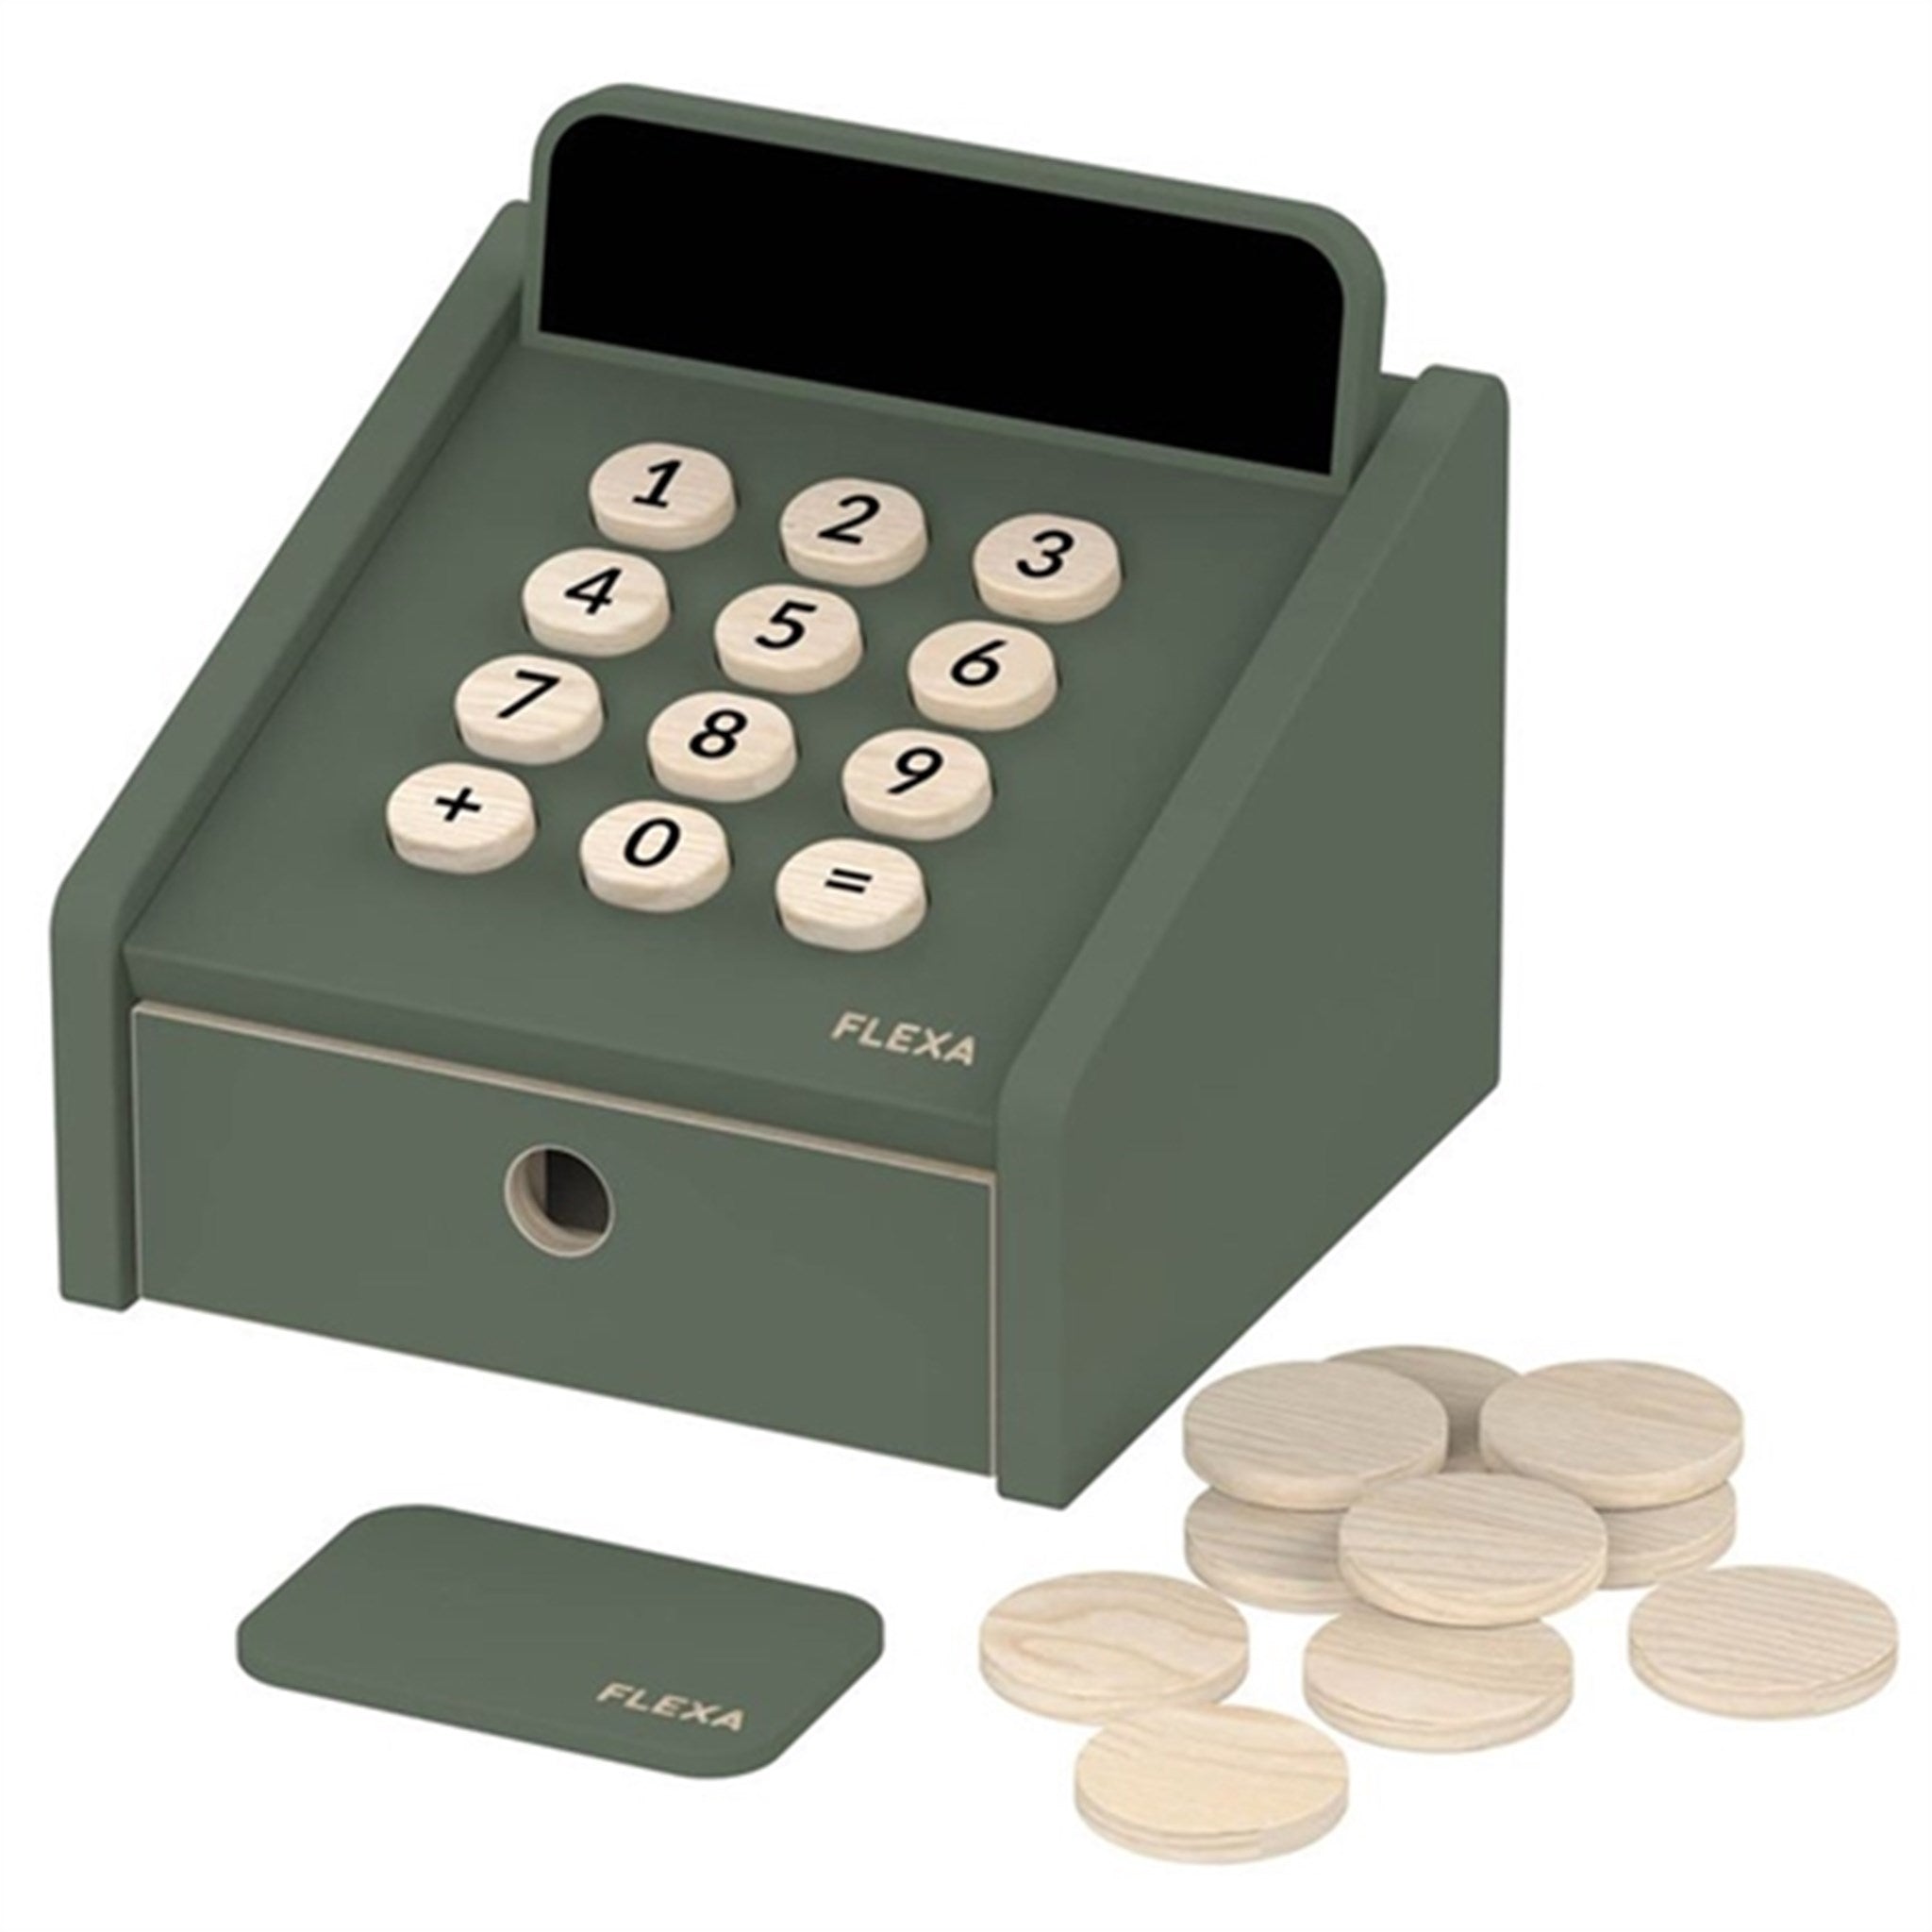 FLEXA PLAY Cash Register Green